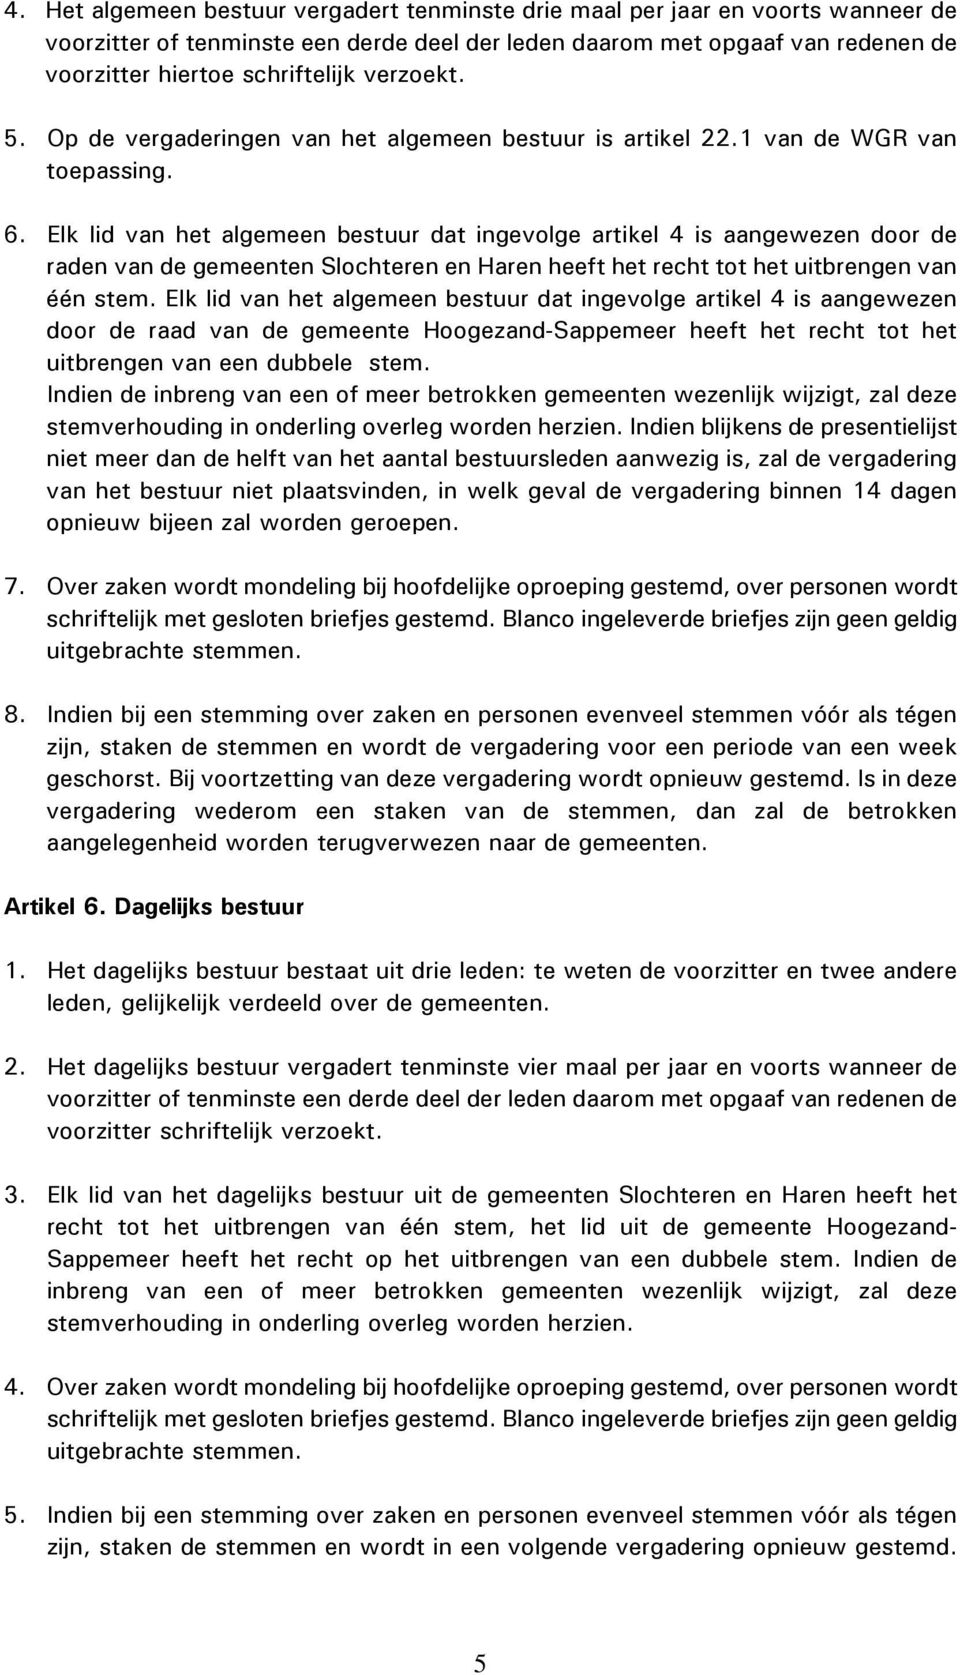 Elk lid van het algemeen bestuur dat ingevolge artikel 4 is aangewezen door de raden van de gemeenten Slochteren en Haren heeft het recht tot het uitbrengen van één stem.